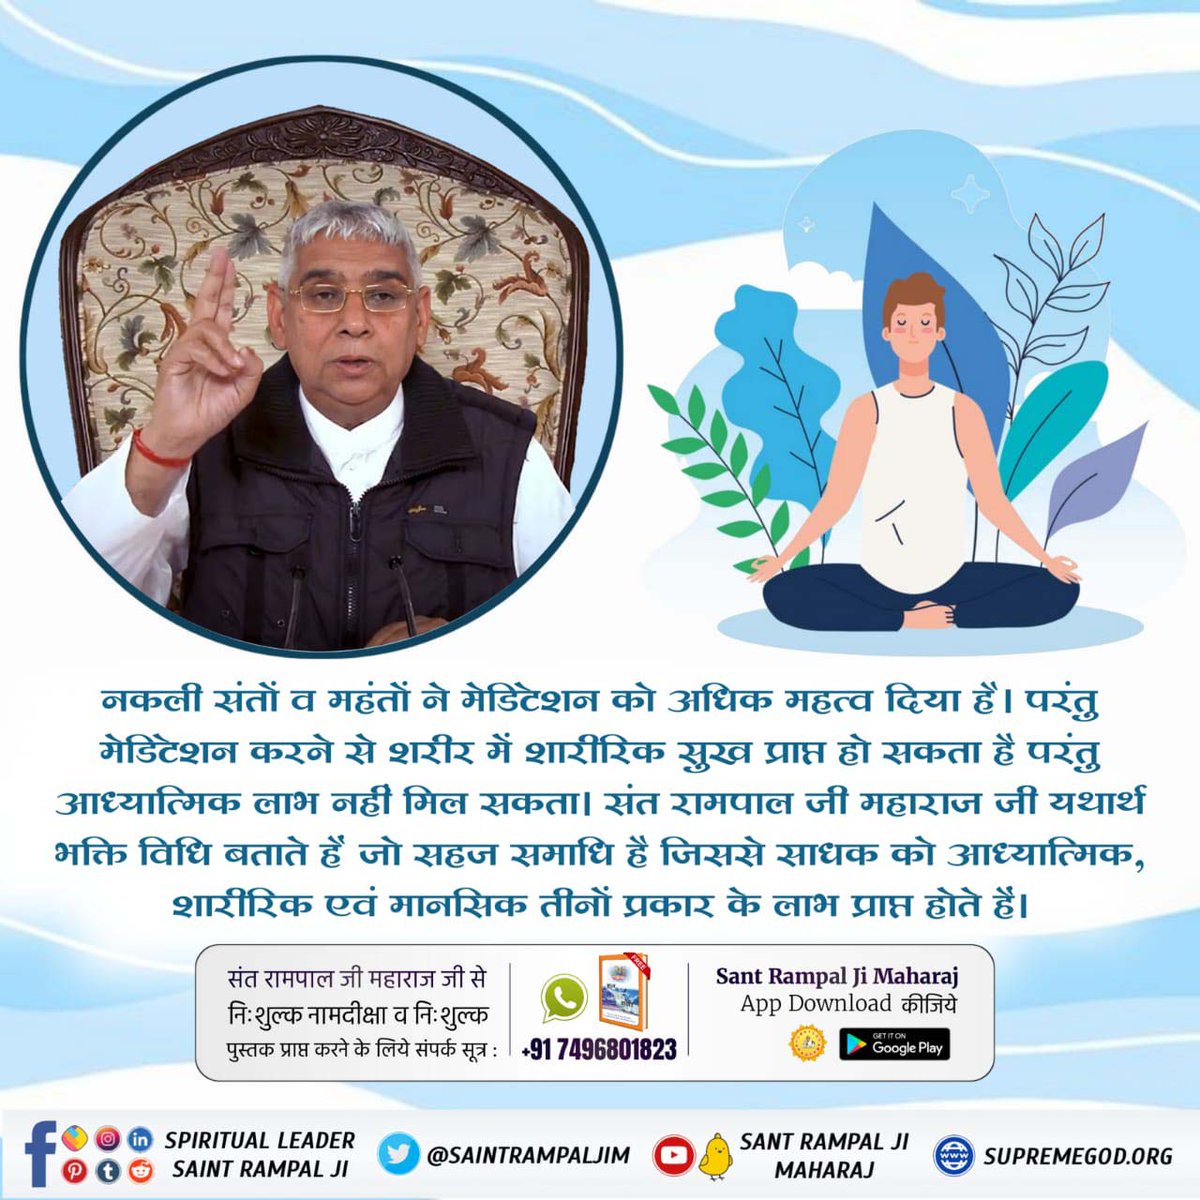 #What_Is_Meditation
मेडिटेशन करने से शारीरिक सुख मिल सकता है लेकिन आध्यात्मिक लाभ नहीं मिल सकता है। परमात्मा से साक्षात्कार करने वाले संतों ने सहज समाधि बताई है जिसमें चलते–फिरते, उठते–बैठते परमात्मा का नाम सिमरन करना होता है।
Sant Rampal Ji Maharaj